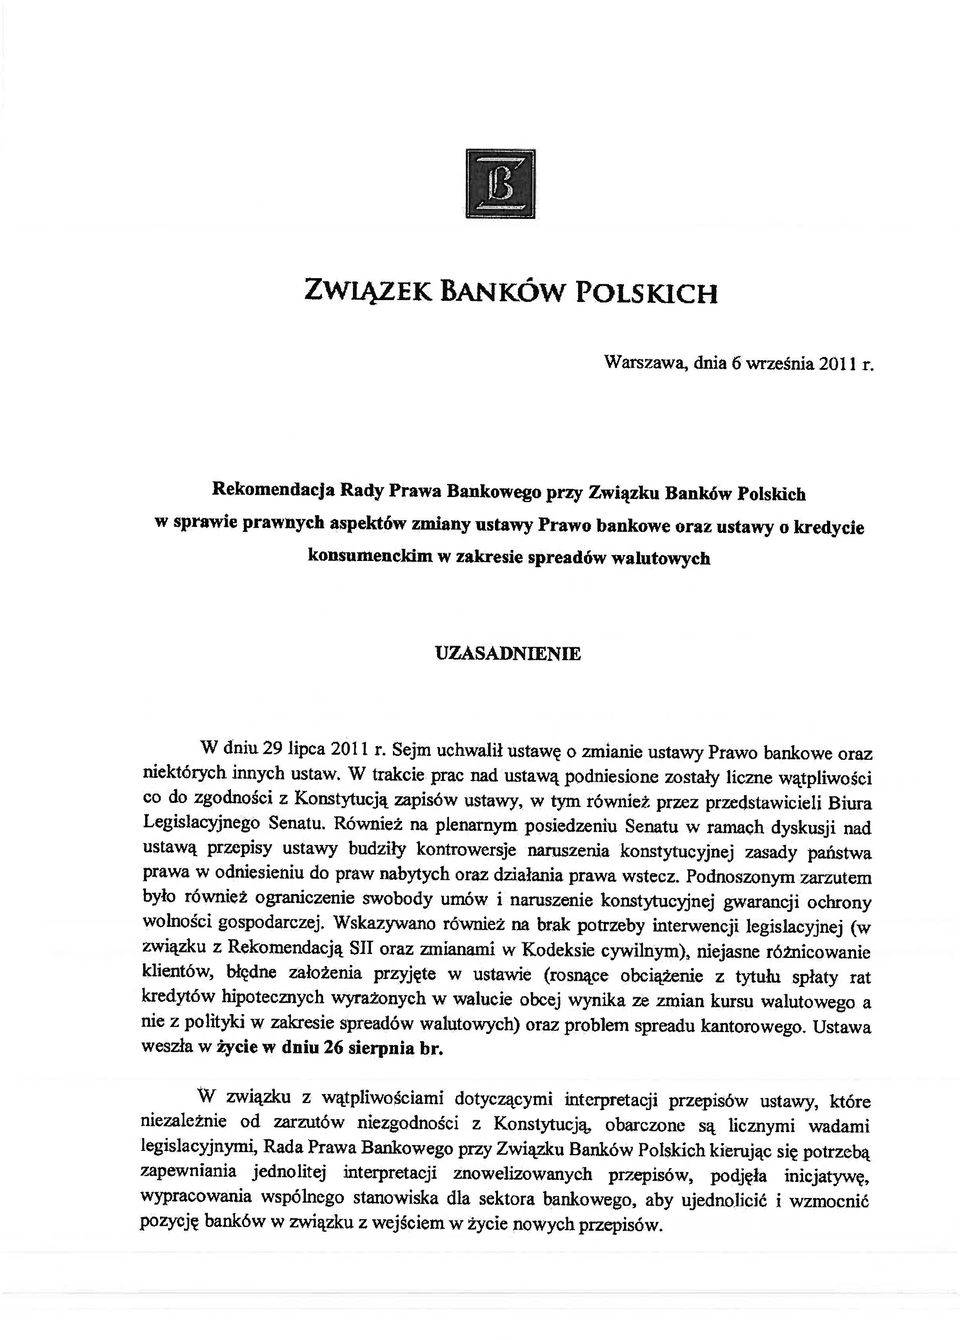 W dniu 29 lipca 2011 r. Sejm uchwalił ustawę o zmianie ustawy Prawo bankowe oraz niektórych innych ustaw.